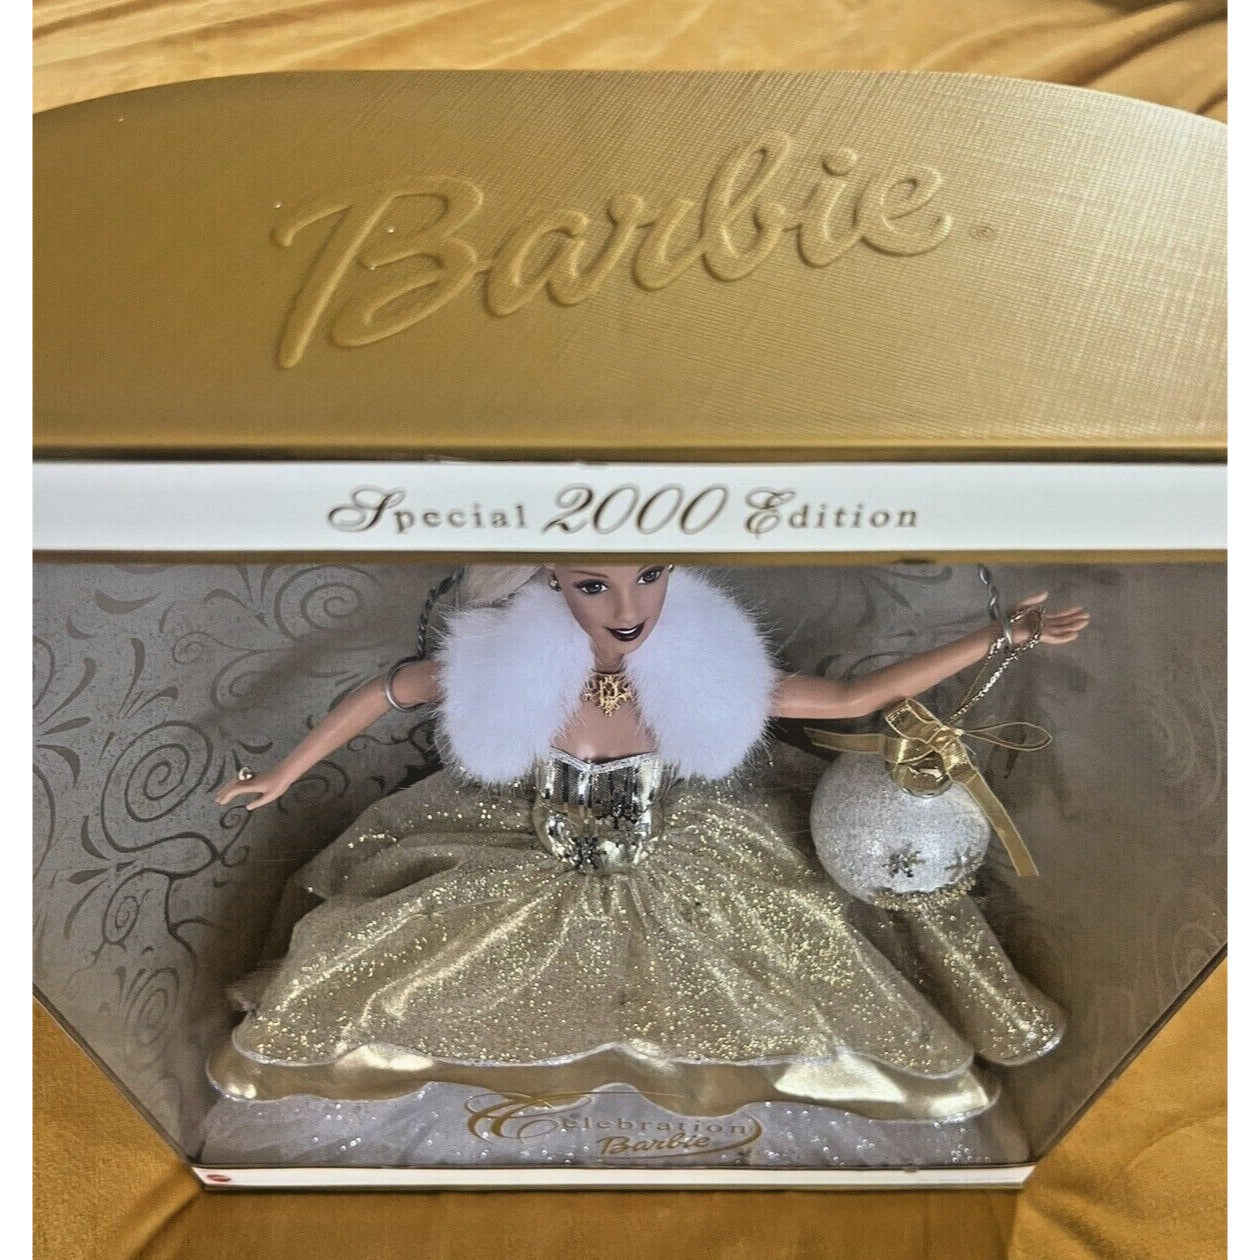 2000 Mattel Barbie Doll Blonde, "Celebration Of Y2K" Special Edition #28269 NRFB